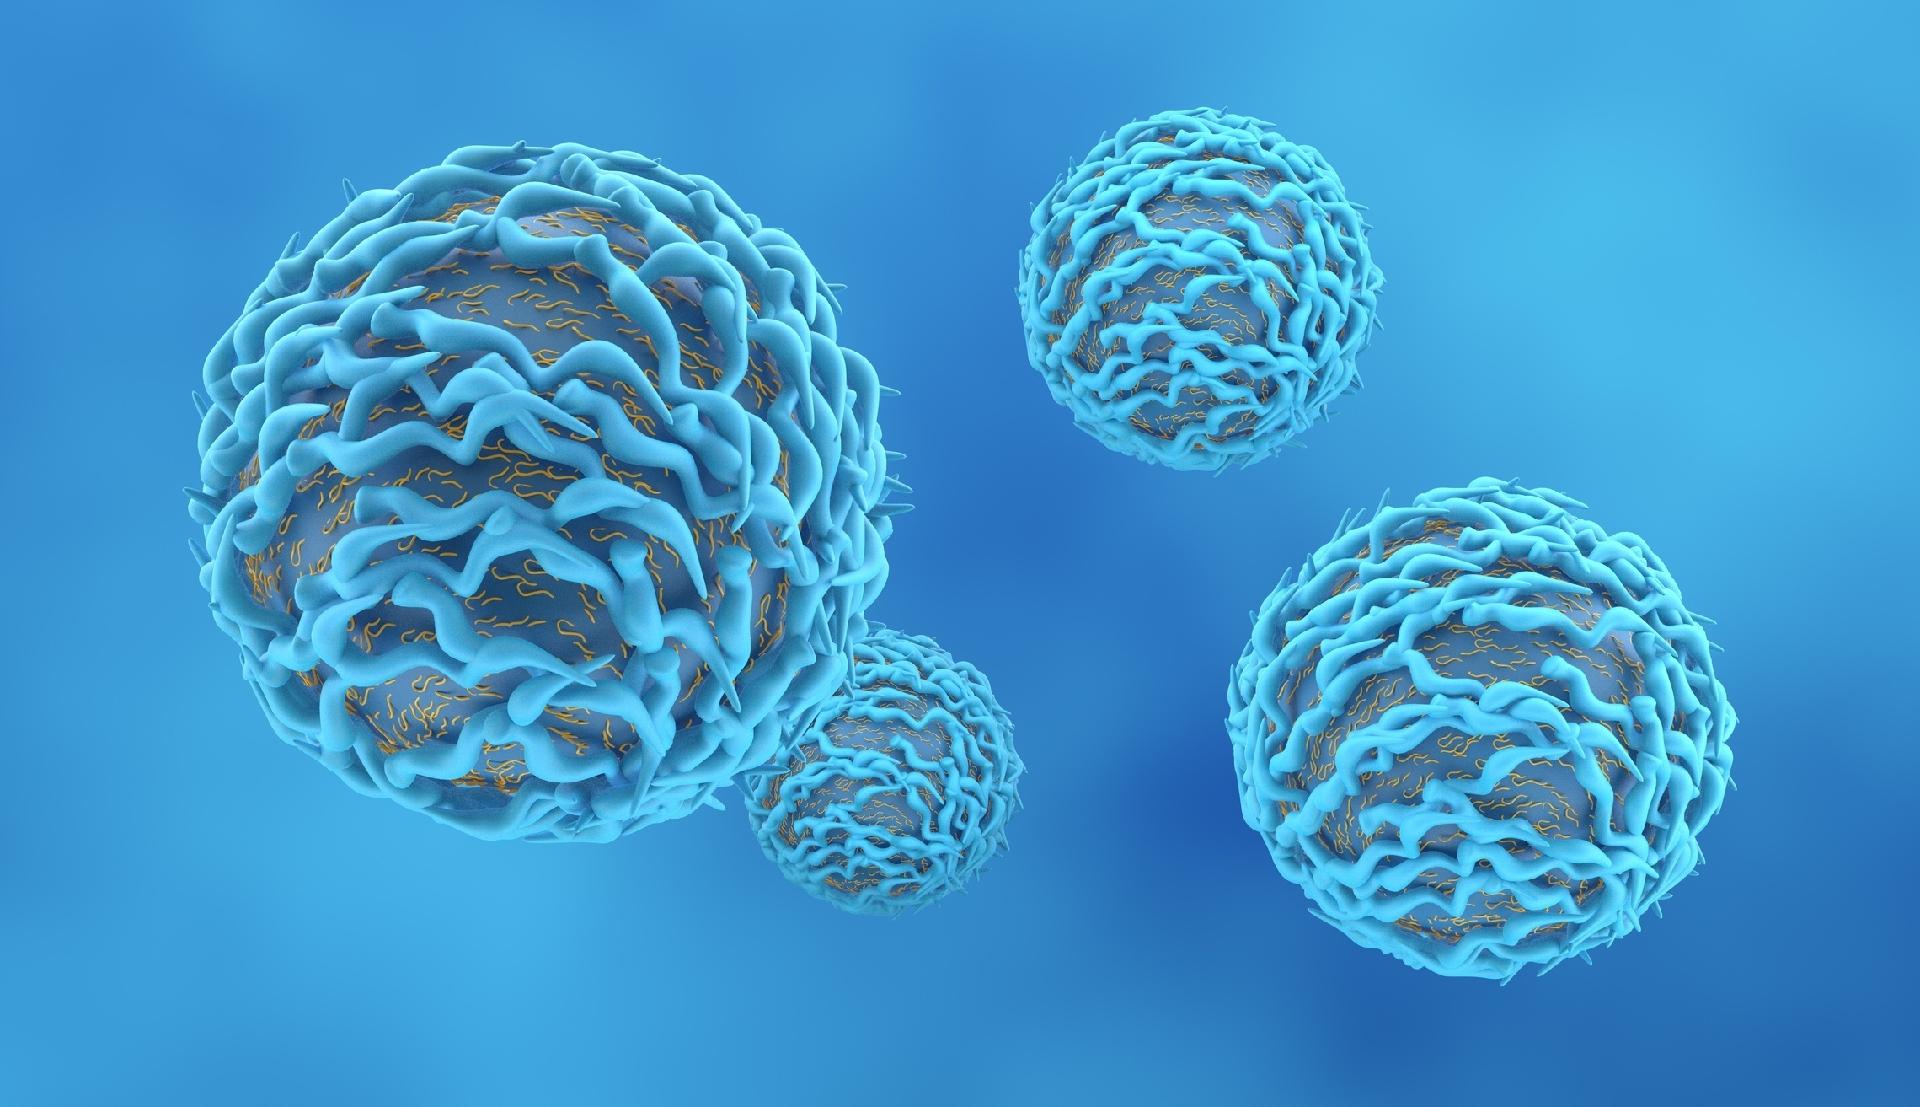 Imunidade celular é essencial para evitar reinfecção pelo novo